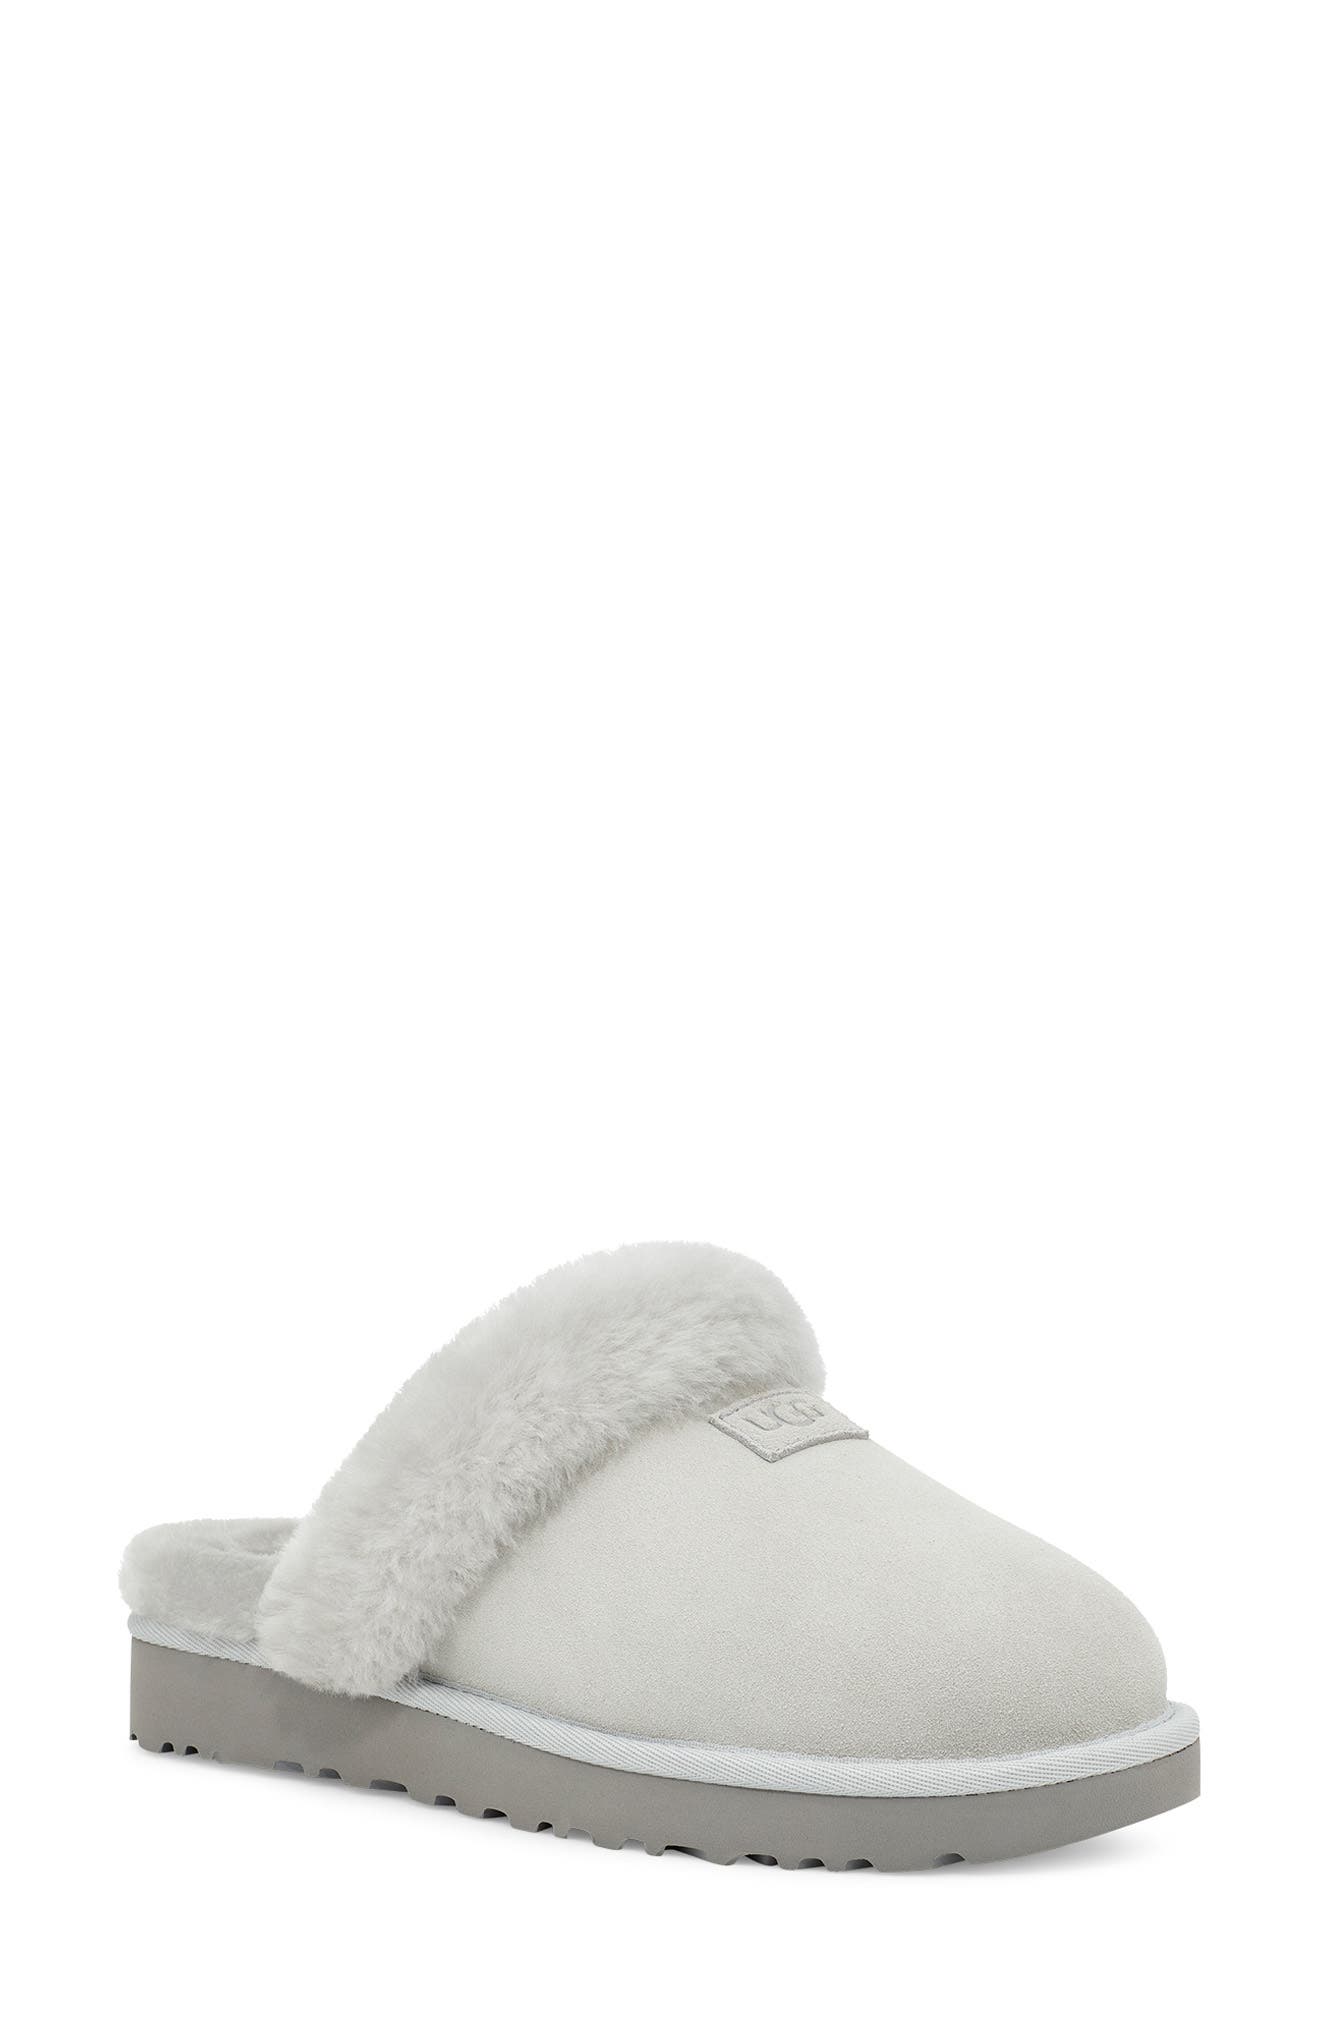 Buy > ugg slippers nordstroms > in stock